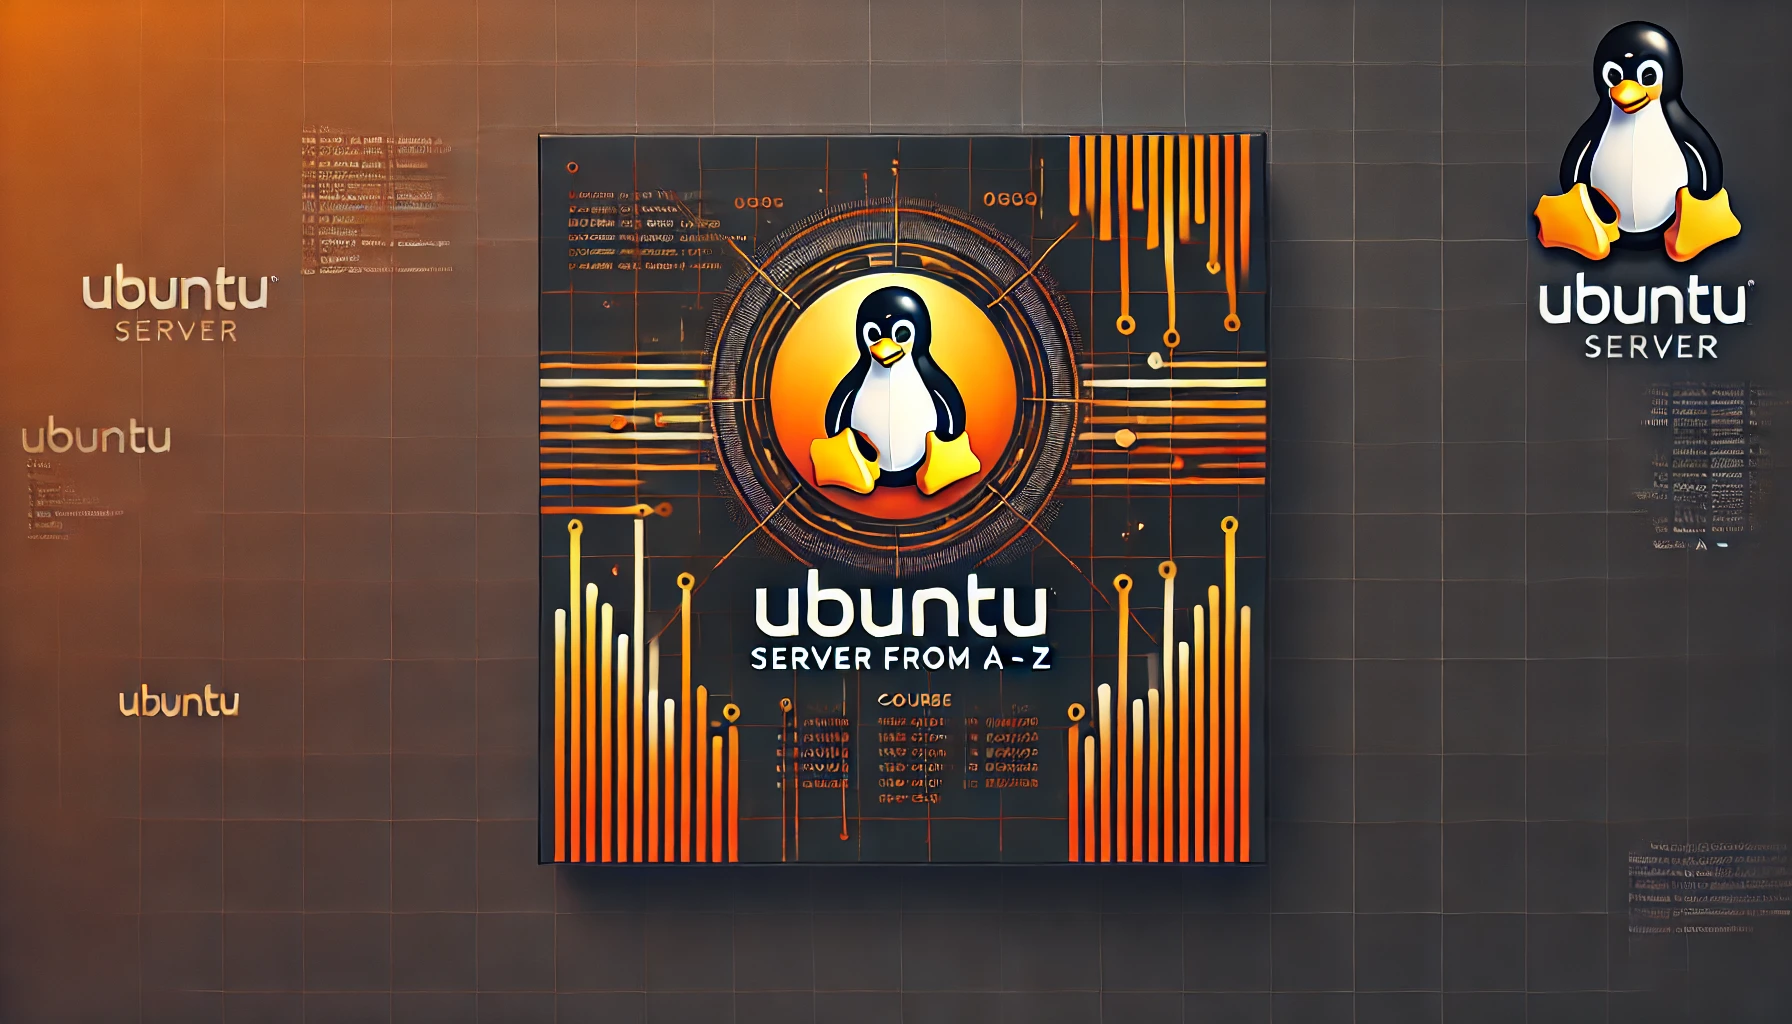 Basic Ubuntu Server Operations Using VirtualBox